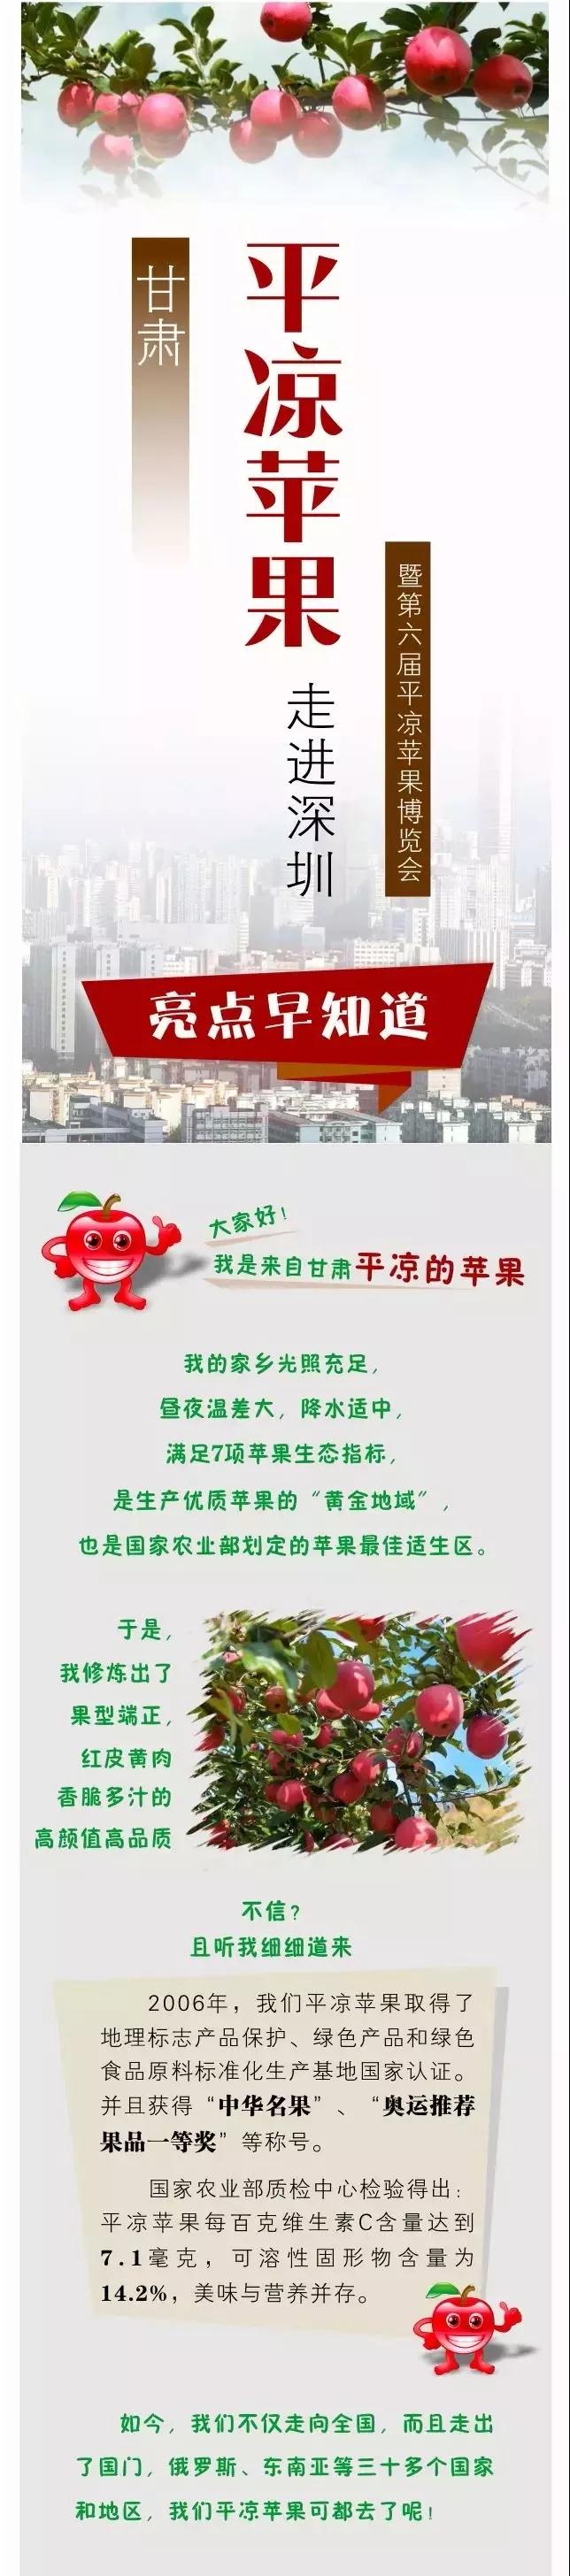 甘肃平凉苹果走进深圳暨第六届平凉苹果博览会